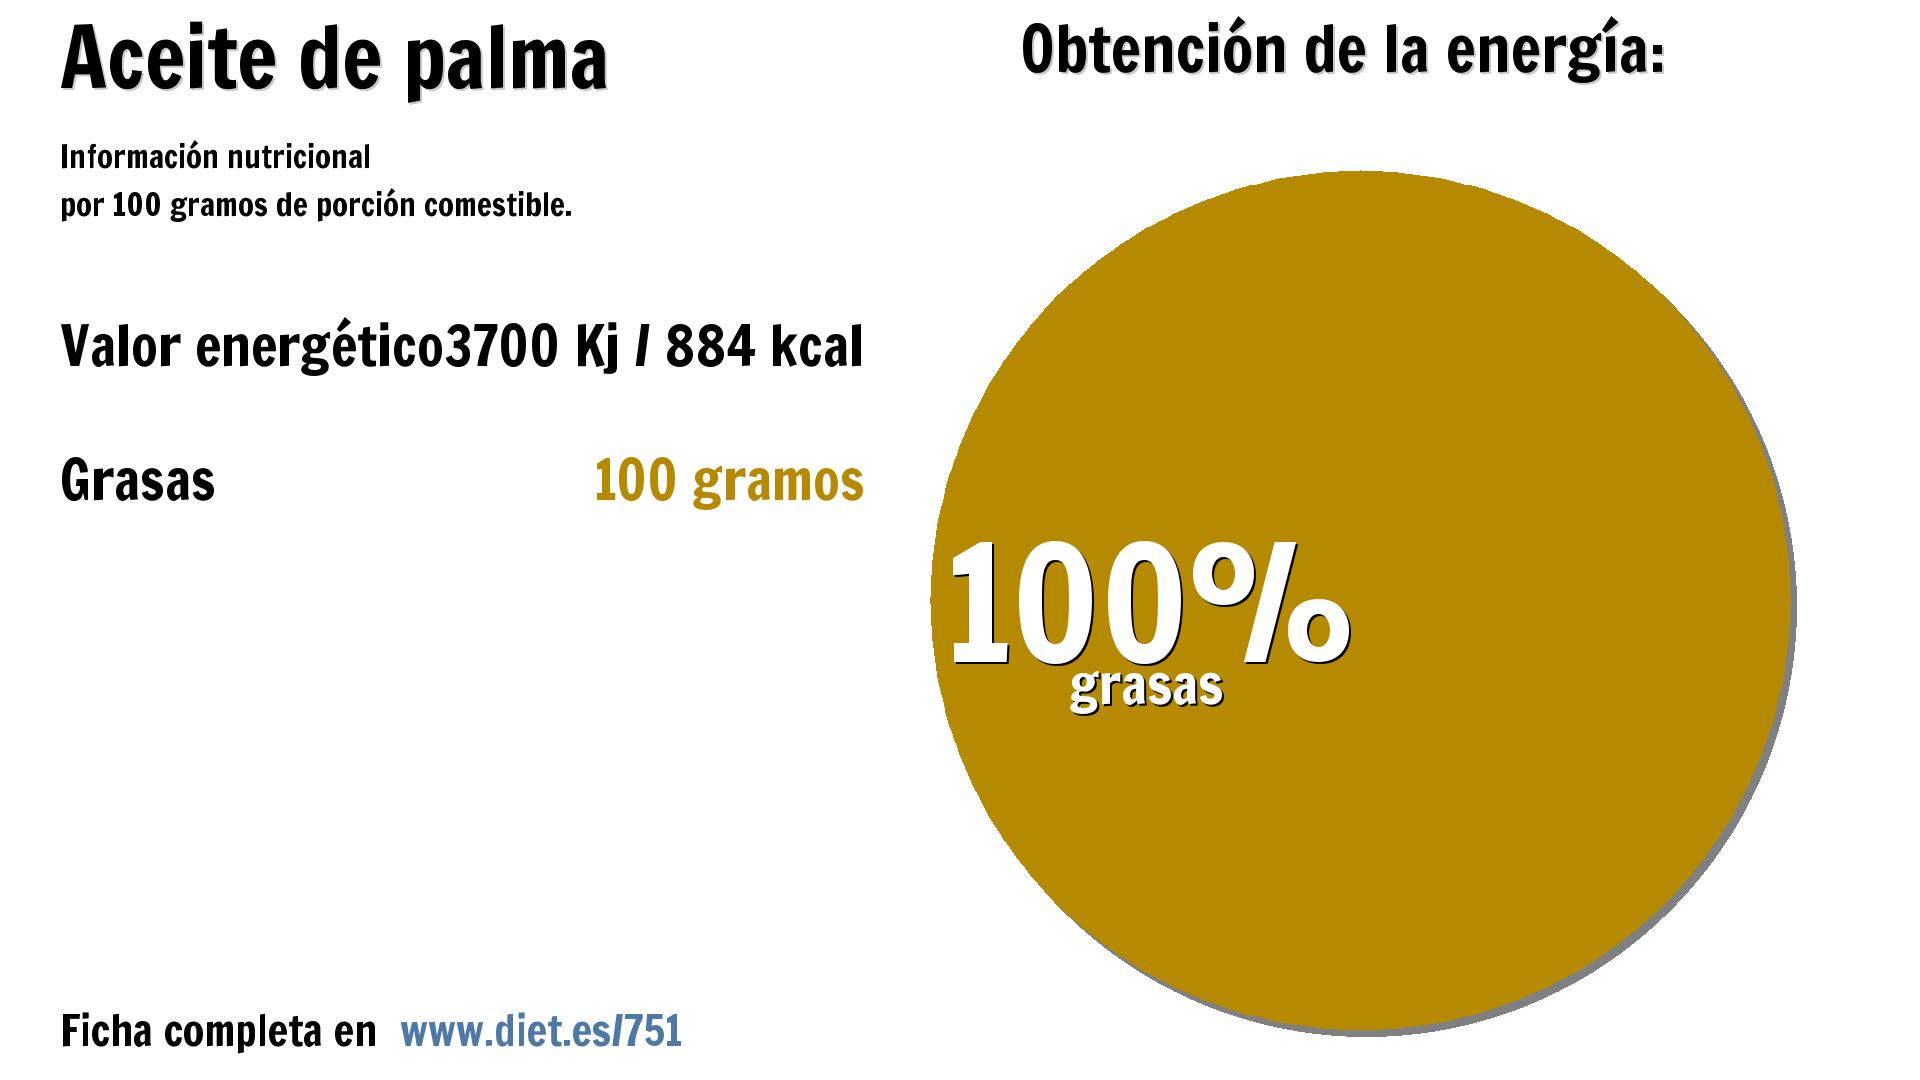 Aceite de palma: energía 3700 Kj y grasas 100 g.